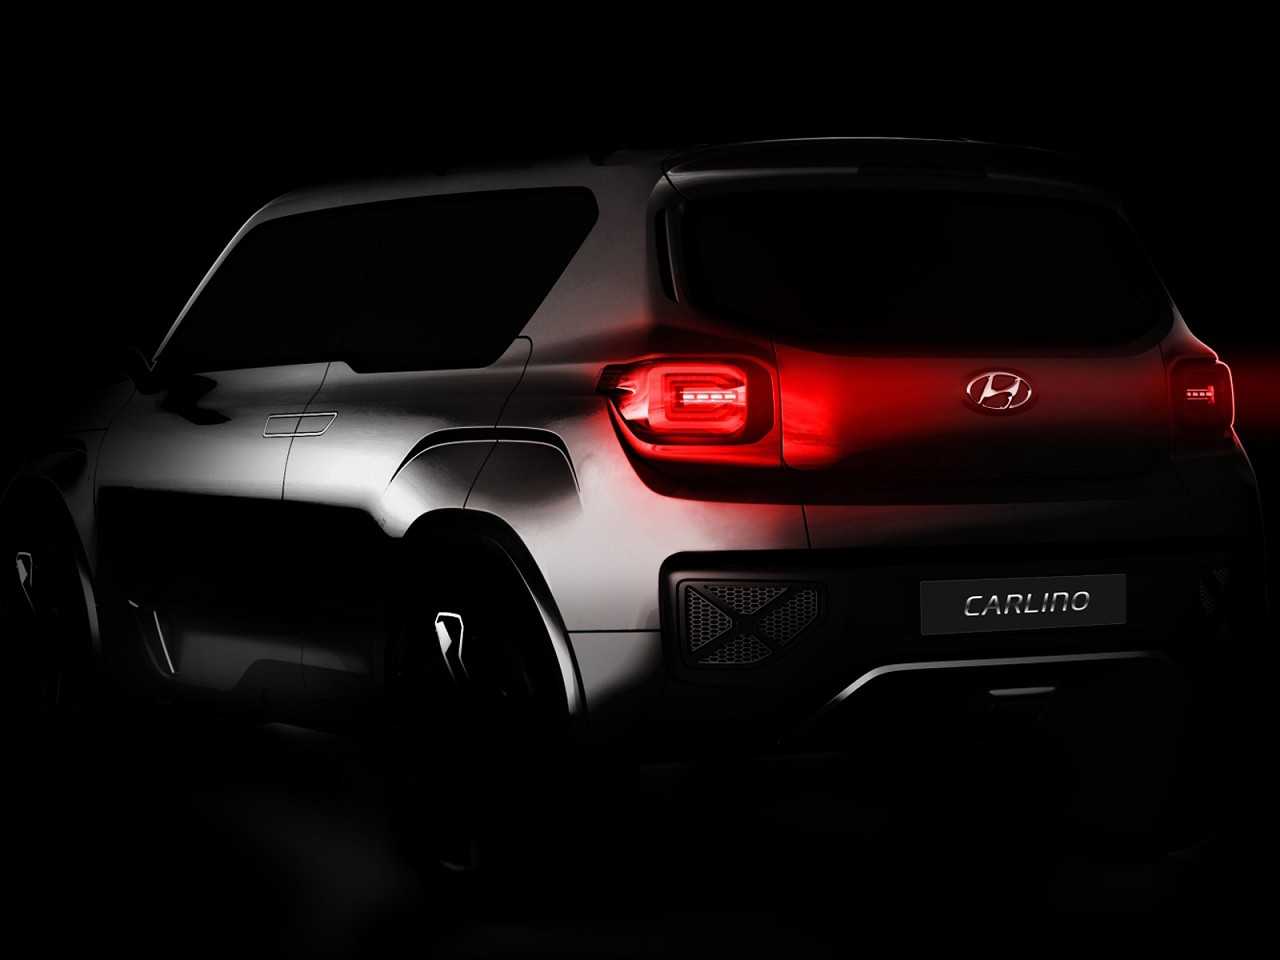 Acima um teaser do conceito Carlino, revelado pela Hyundai em 2016 na ndia